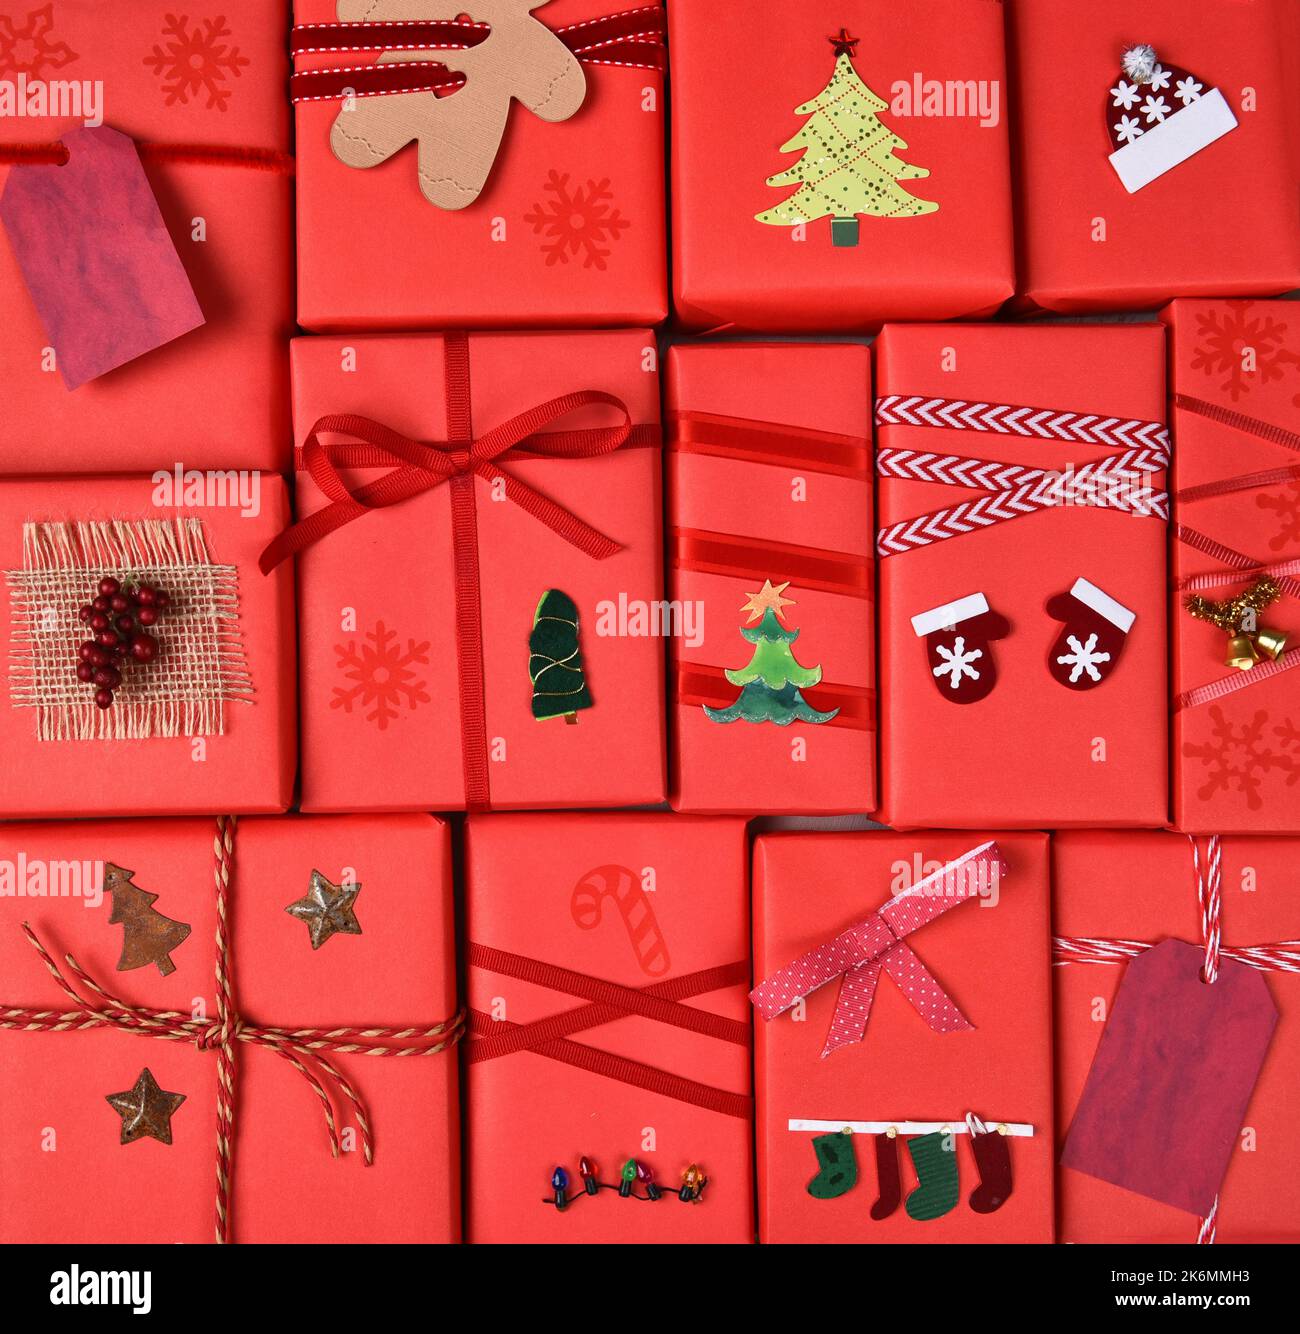 Cadeaux de Noël. Gros plan des cadeaux emballés dans du papier rouge avec des rubans et des décorations. Format carré remplissant le cadre. Banque D'Images